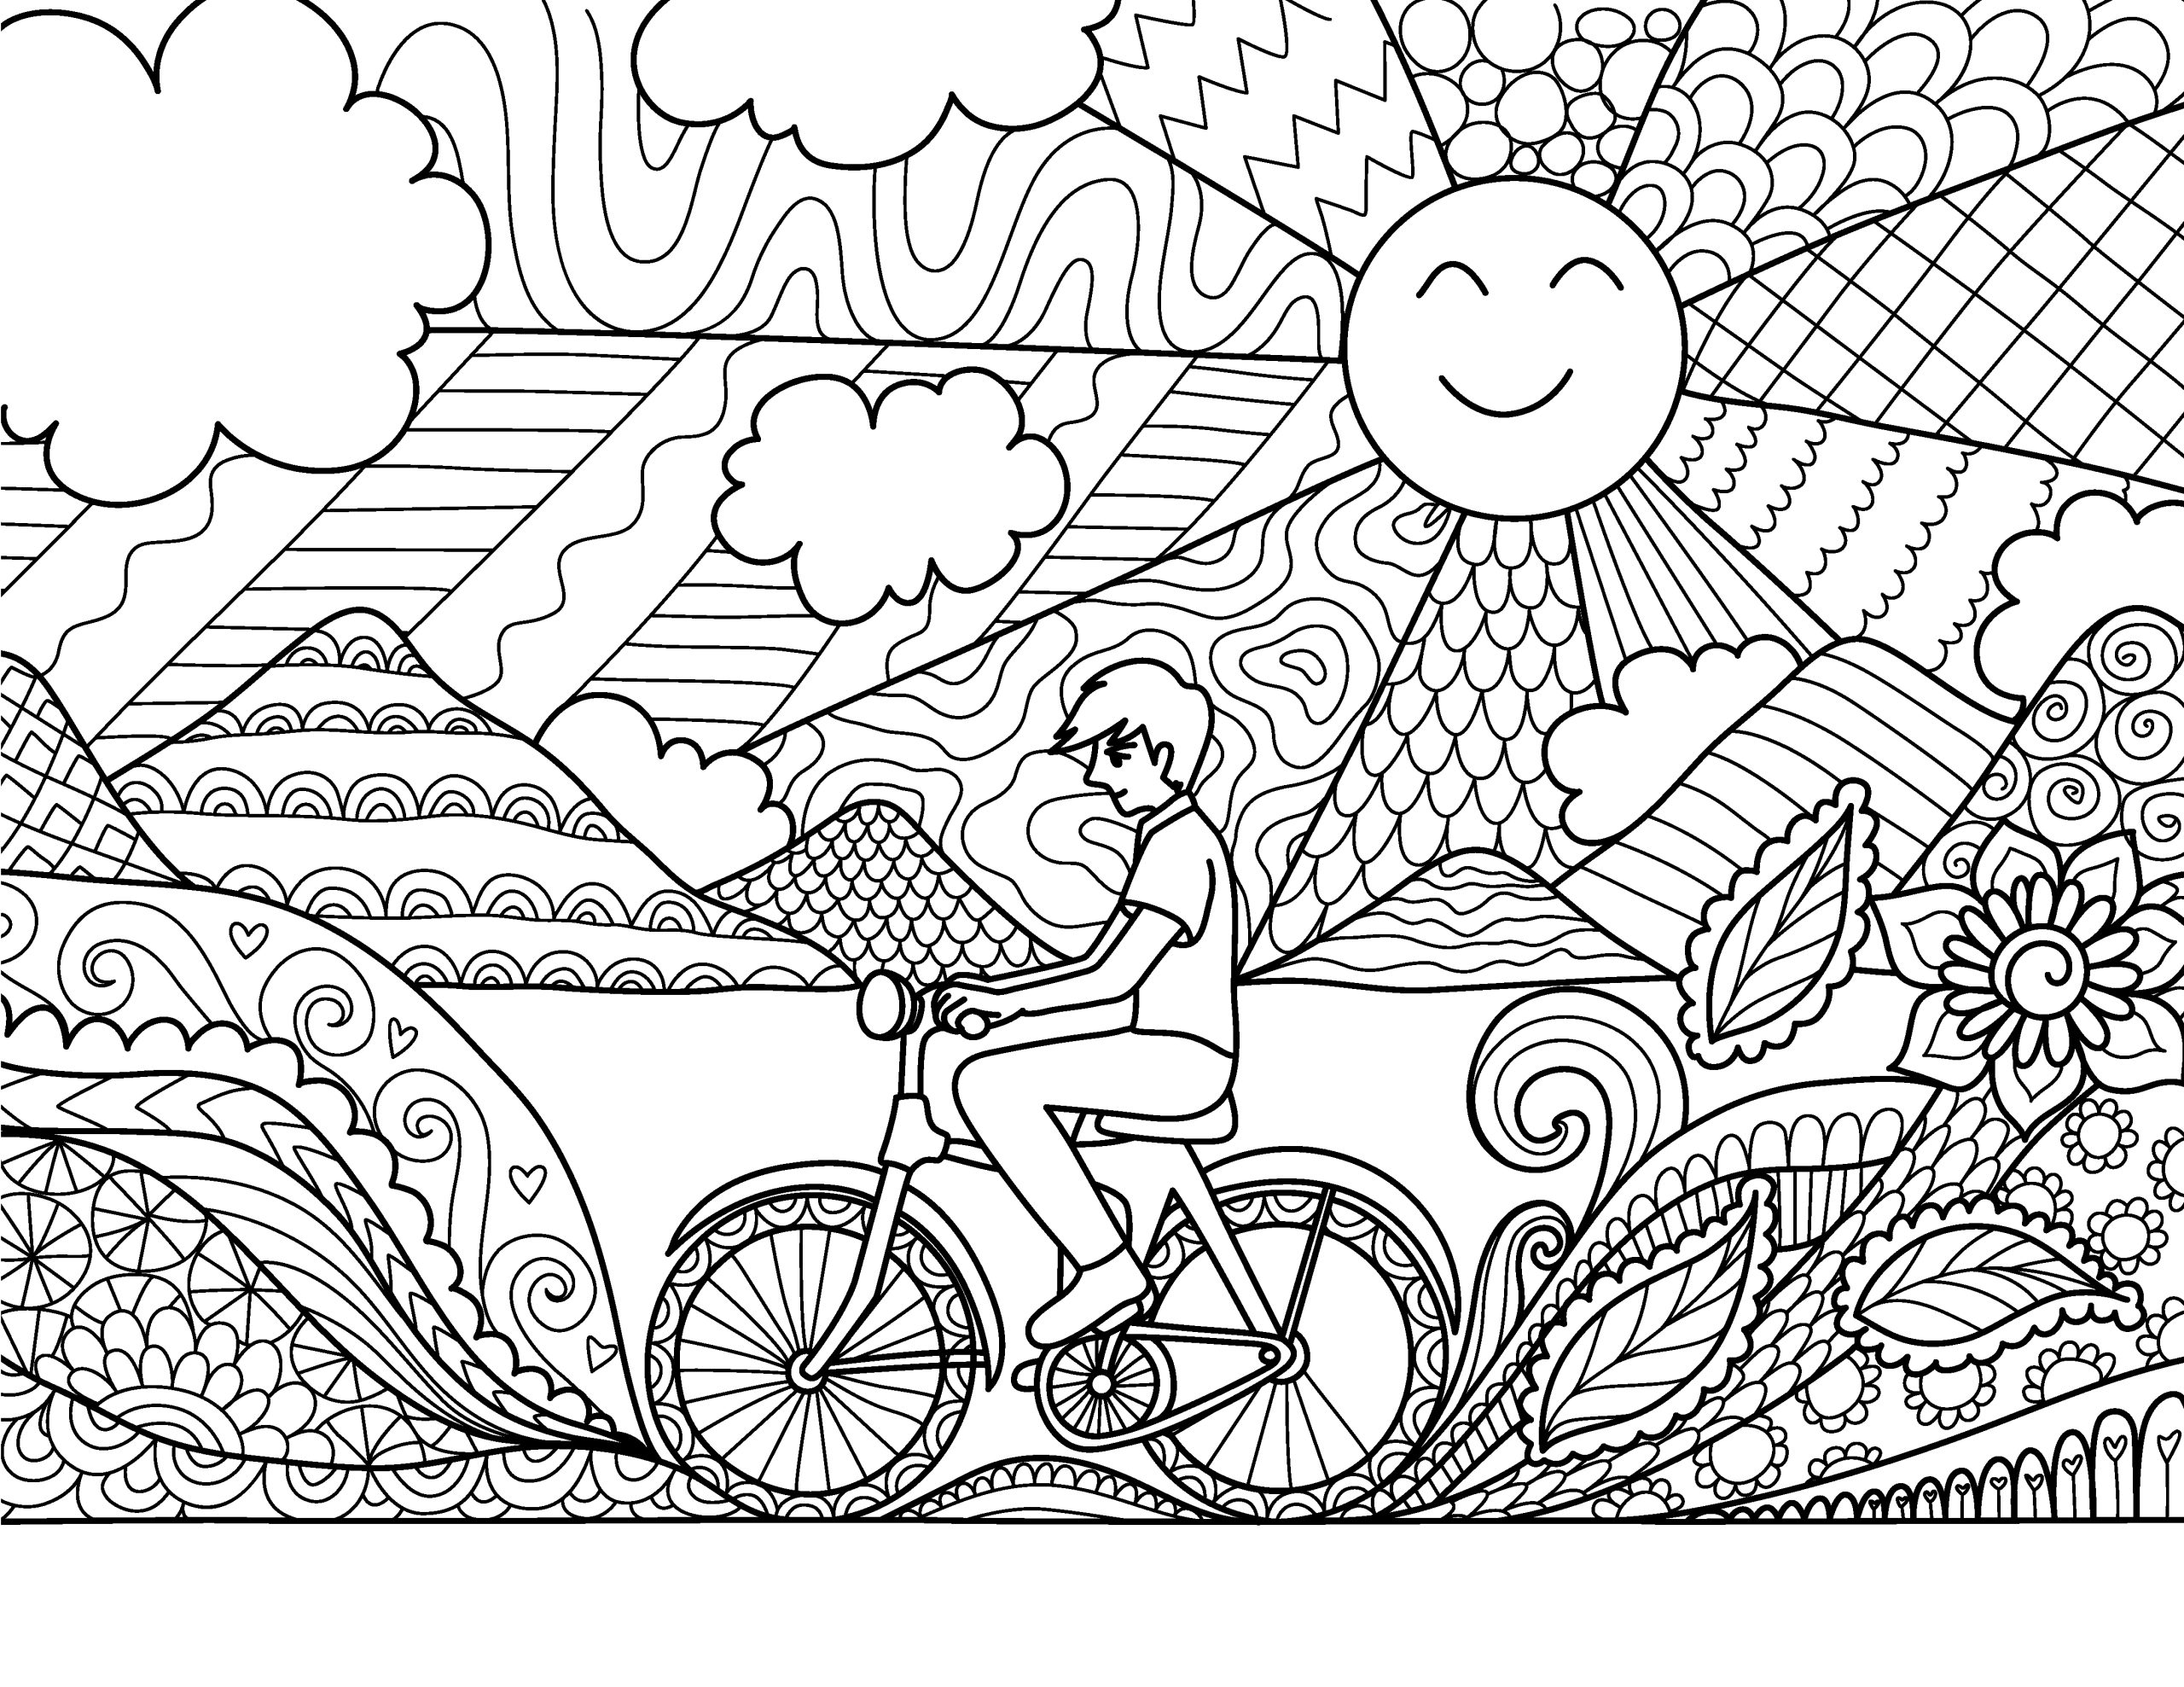 Bicicleta-para-colorir-difícil